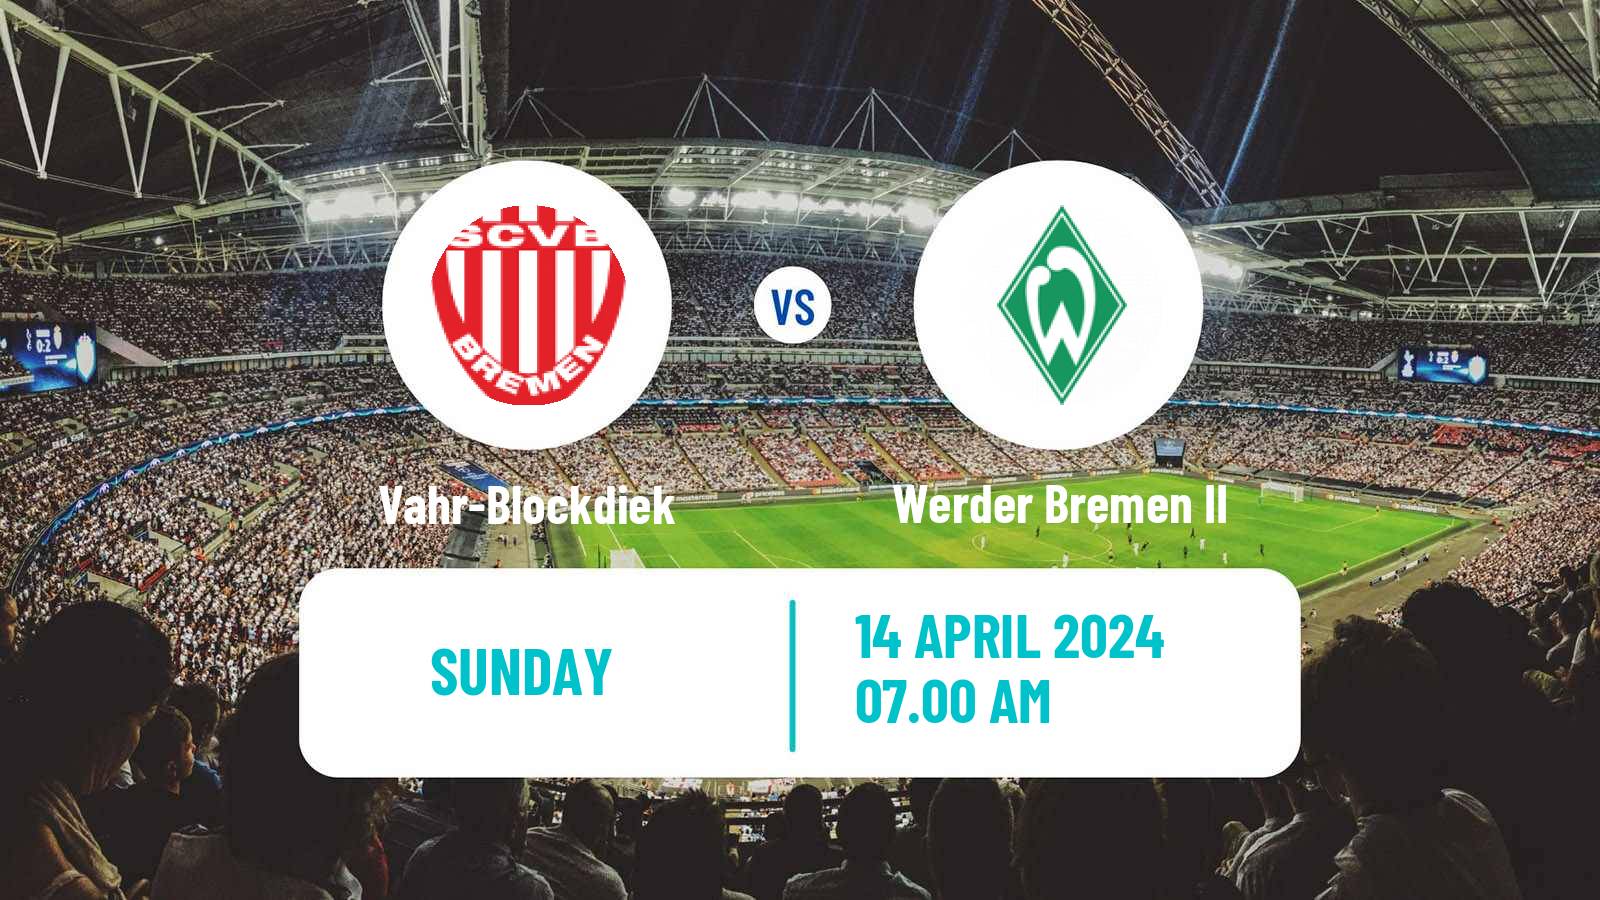 Soccer German Oberliga Bremen Vahr-Blockdiek - Werder Bremen II